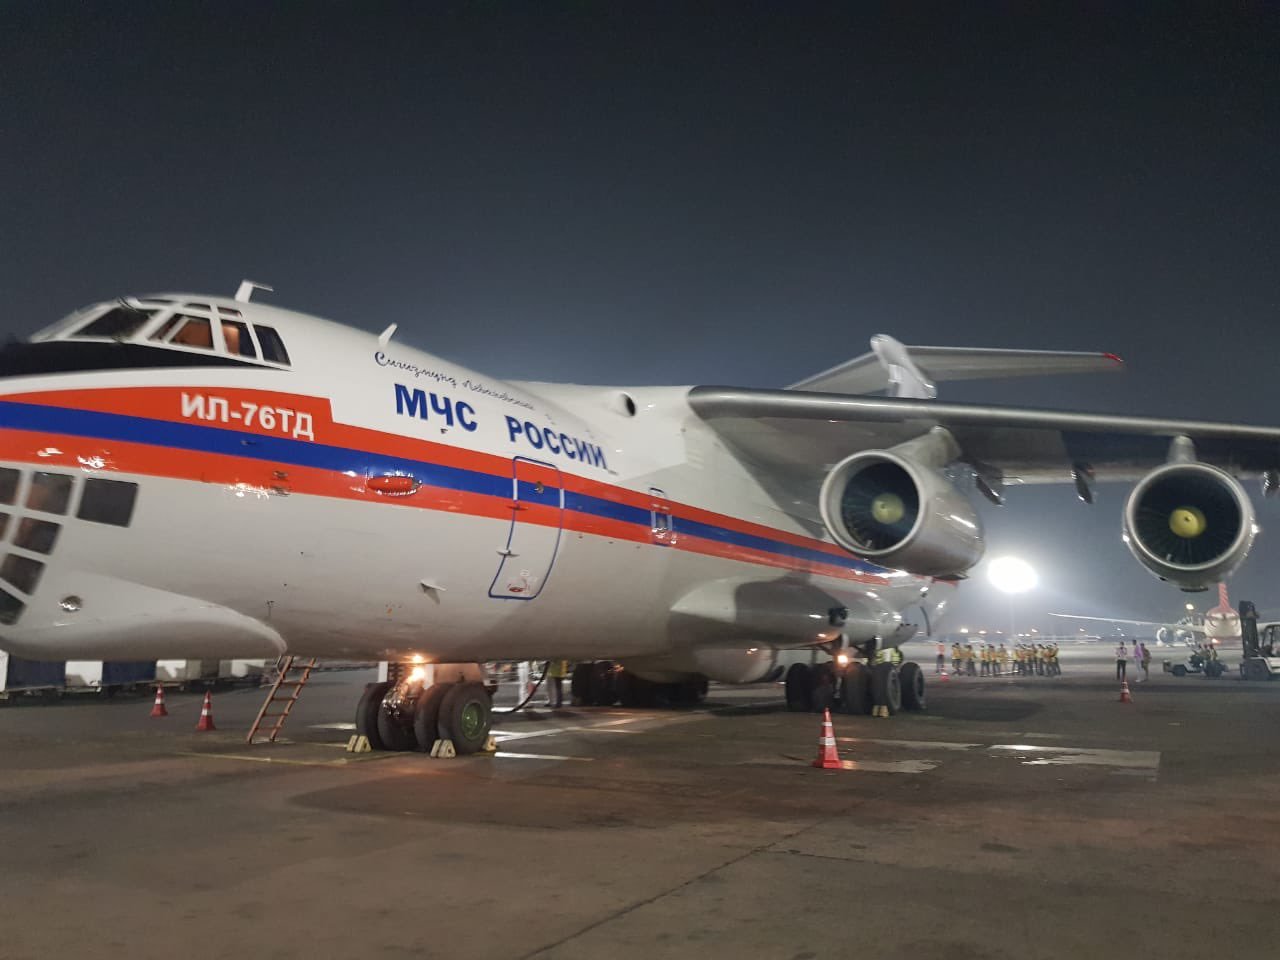 भारताला करोना कालावधीमध्ये रशियाने पाठवलेल्या मदतीची पहिली खेप आज (२९ एप्रिल २०२१ रोजी) दिल्ली विमानतळावर दाखल झाली. पहाटेच्या सुमारास हे विमान दिल्ली विमानतळावर उतरलं.